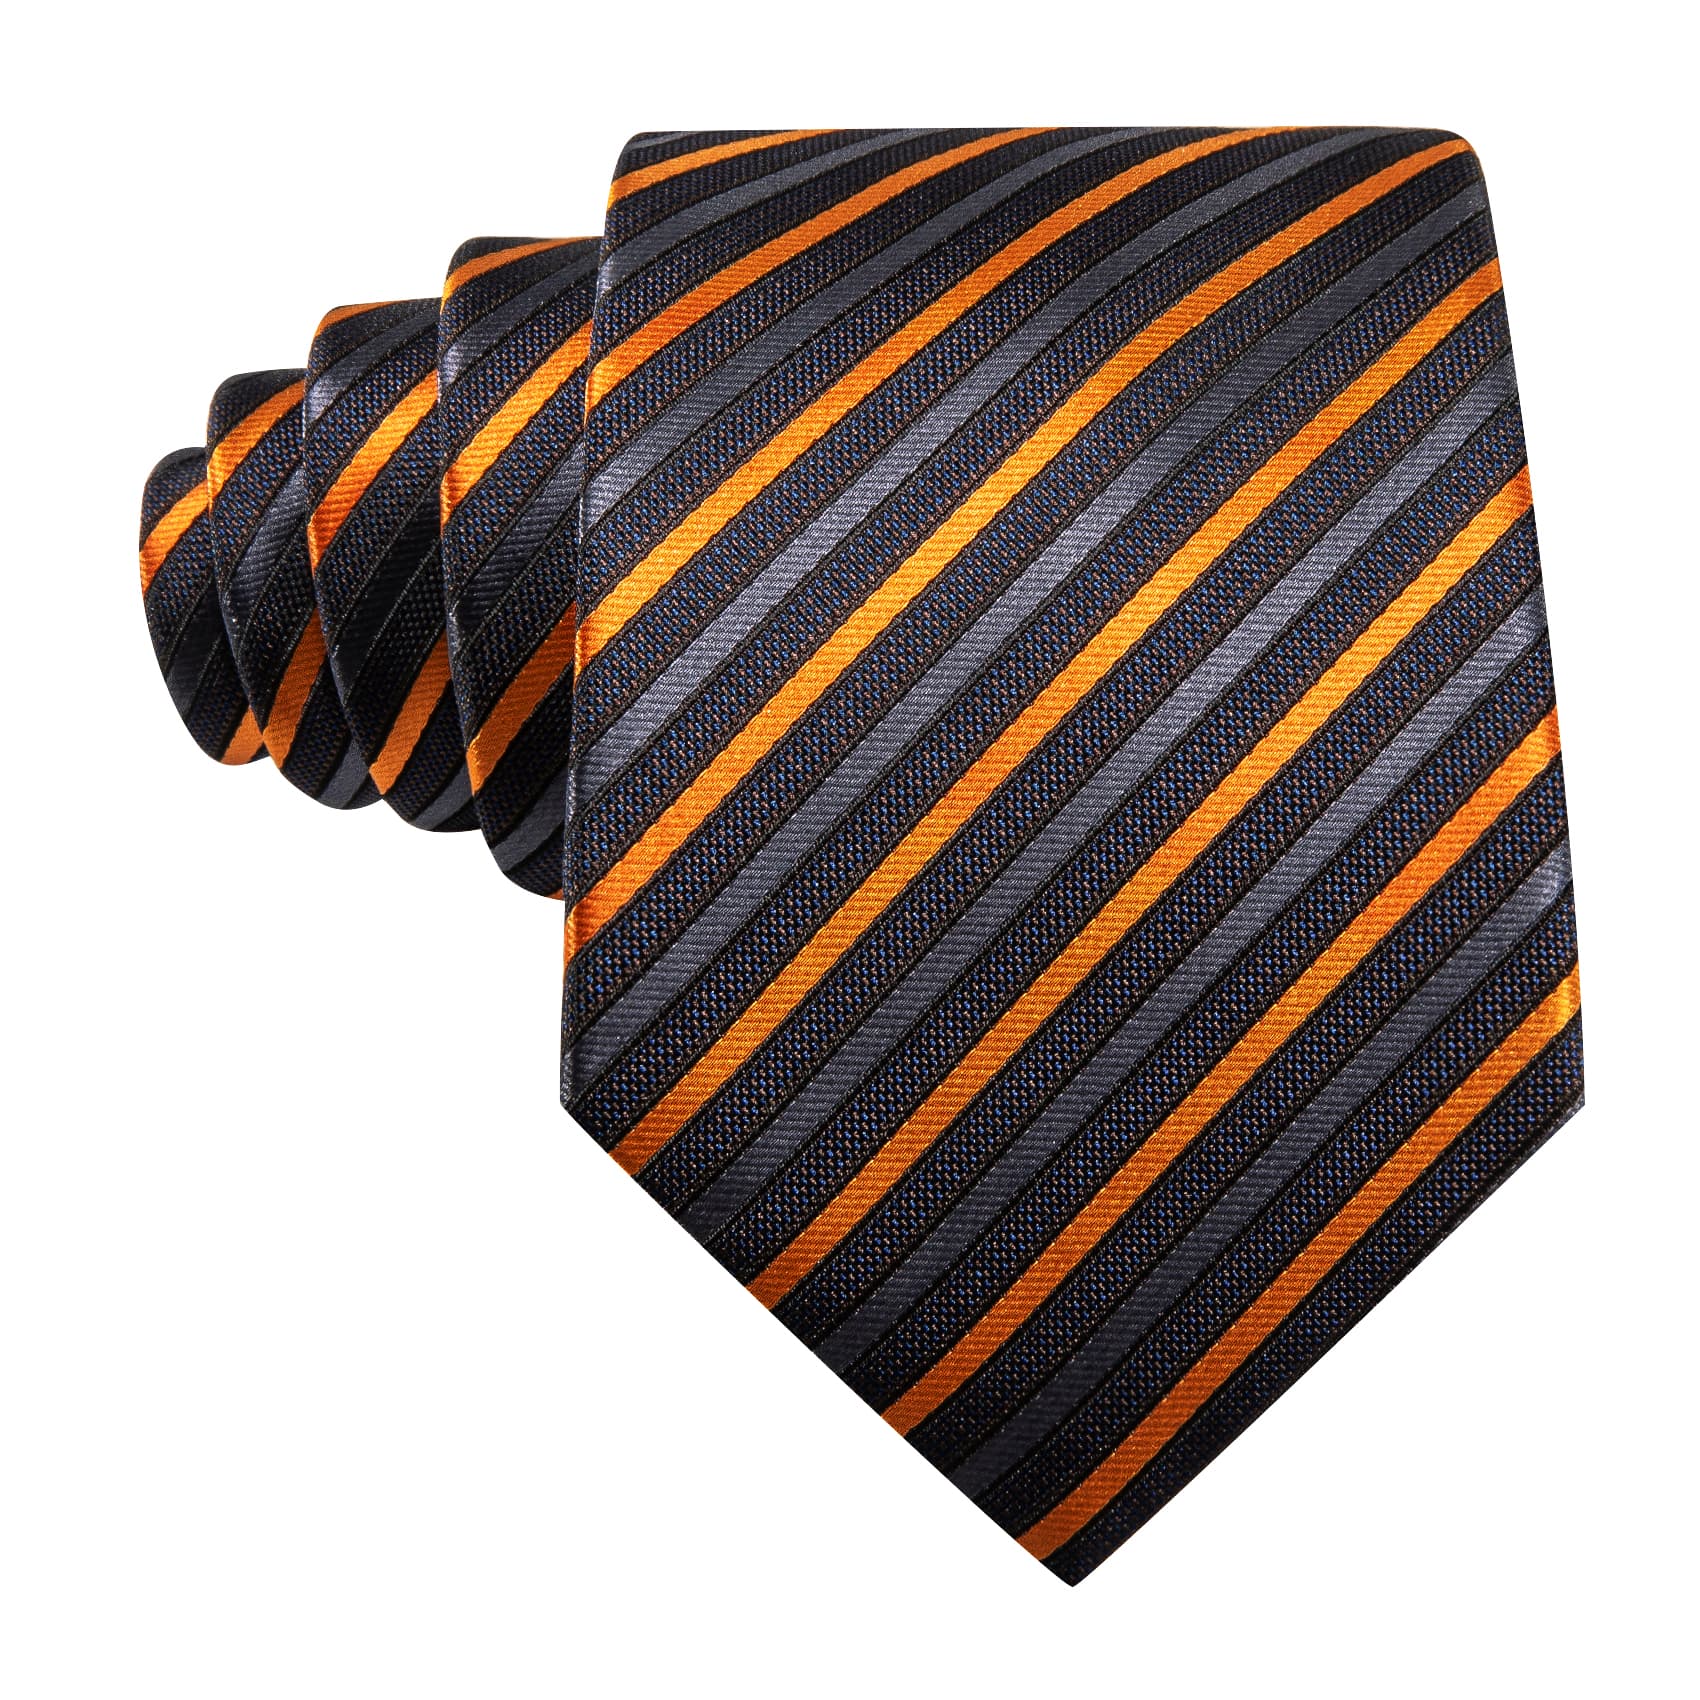 Black Striped Tie with Gold Grey Stripes Men's Necktie Set